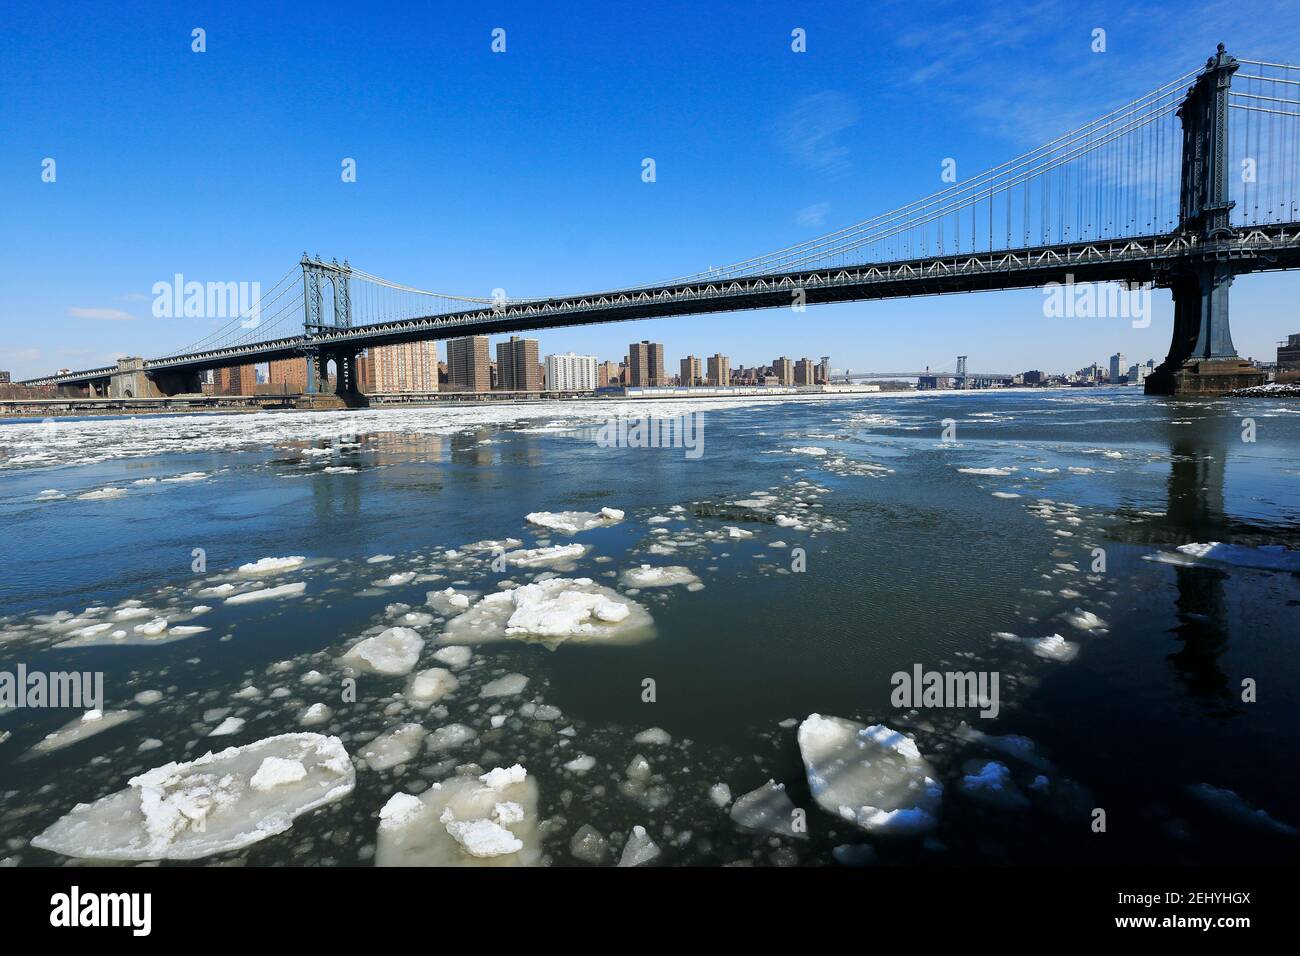 Gefrorene Eisbrocken schwimmen und driften im East River aufgrund der kalten Wetterbedingungen in Brooklyn ward in New York City NY USA am 2015. Februar. Stockfoto